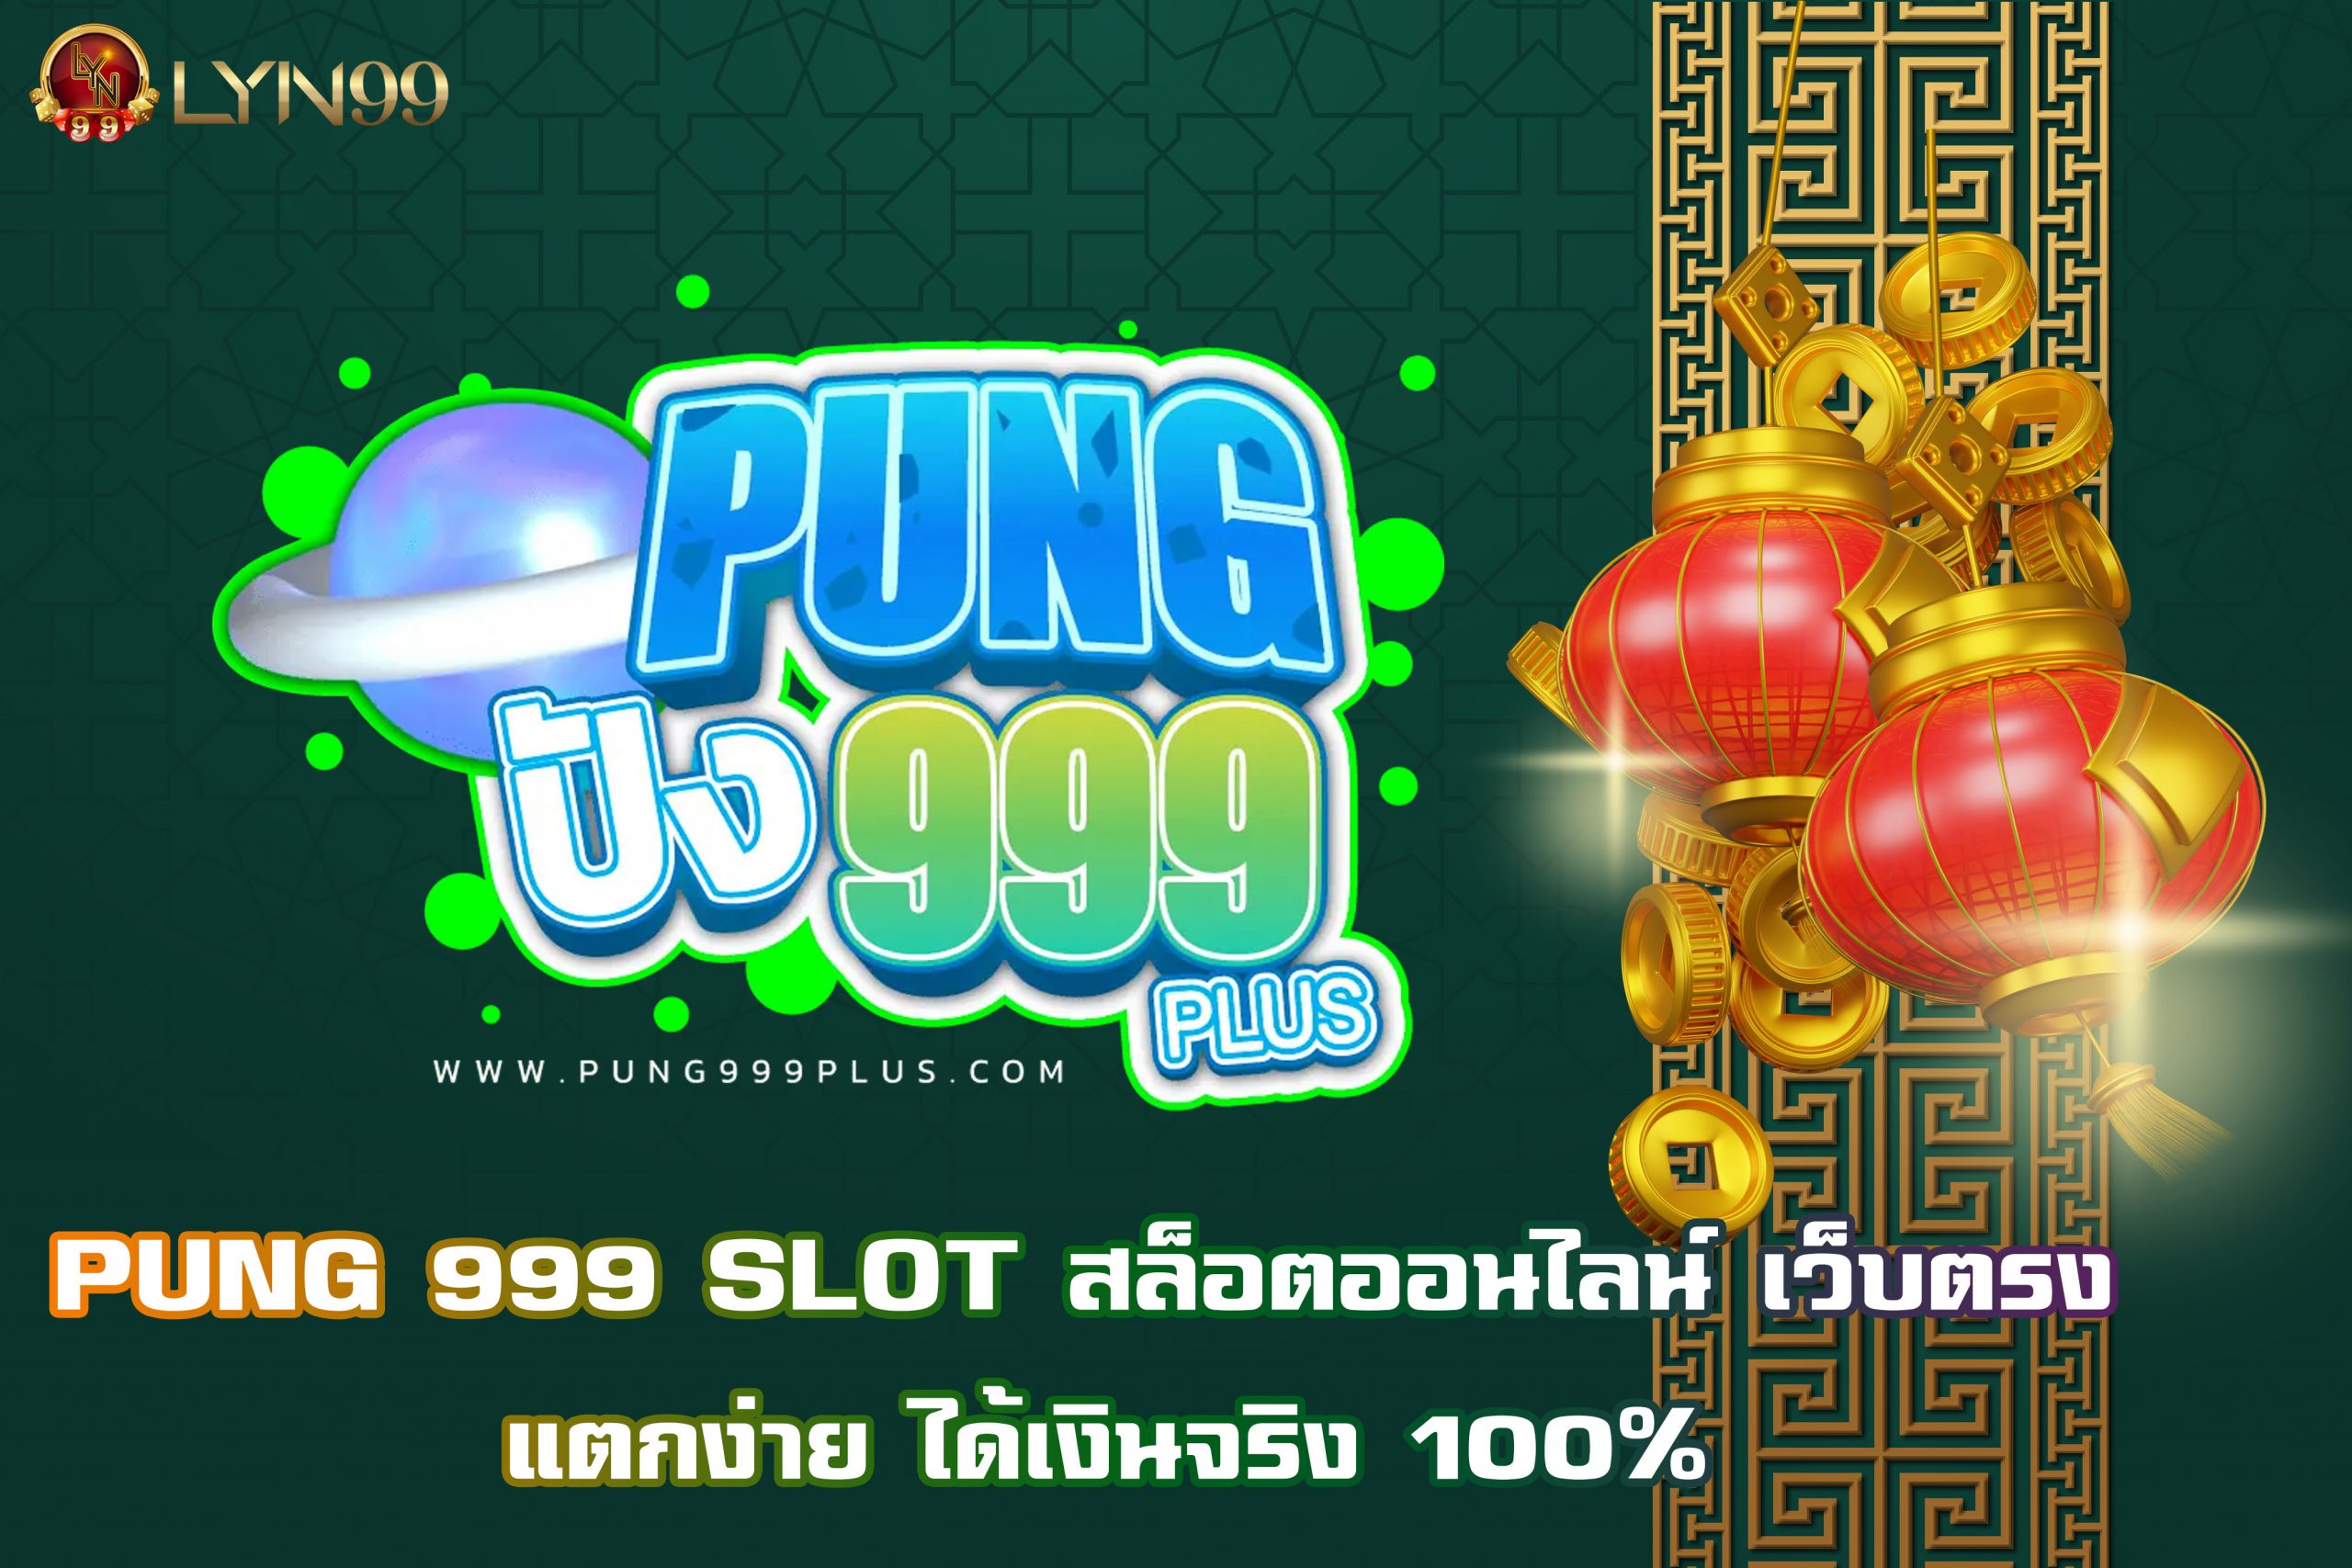 PUNG 999 SLOT สล็อตออนไลน์ เว็บตรง แตกง่าย ได้เงินจริง 100%